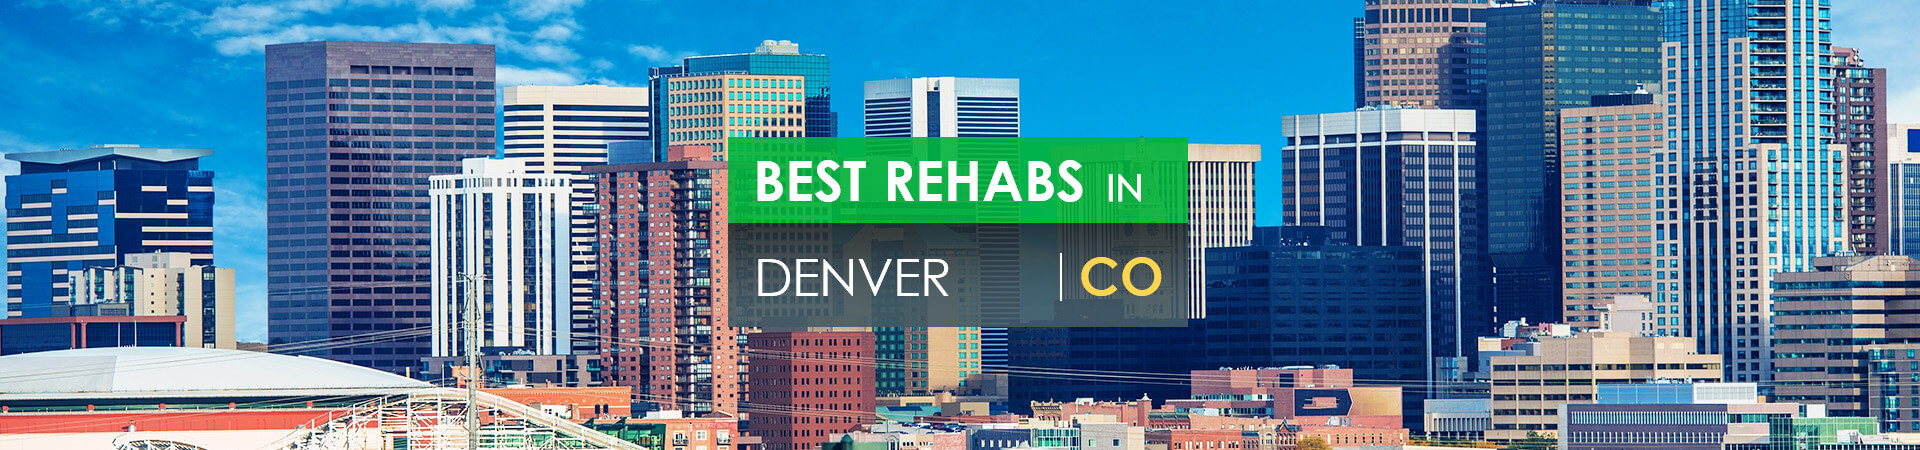 Best rehabs in Denver, CO